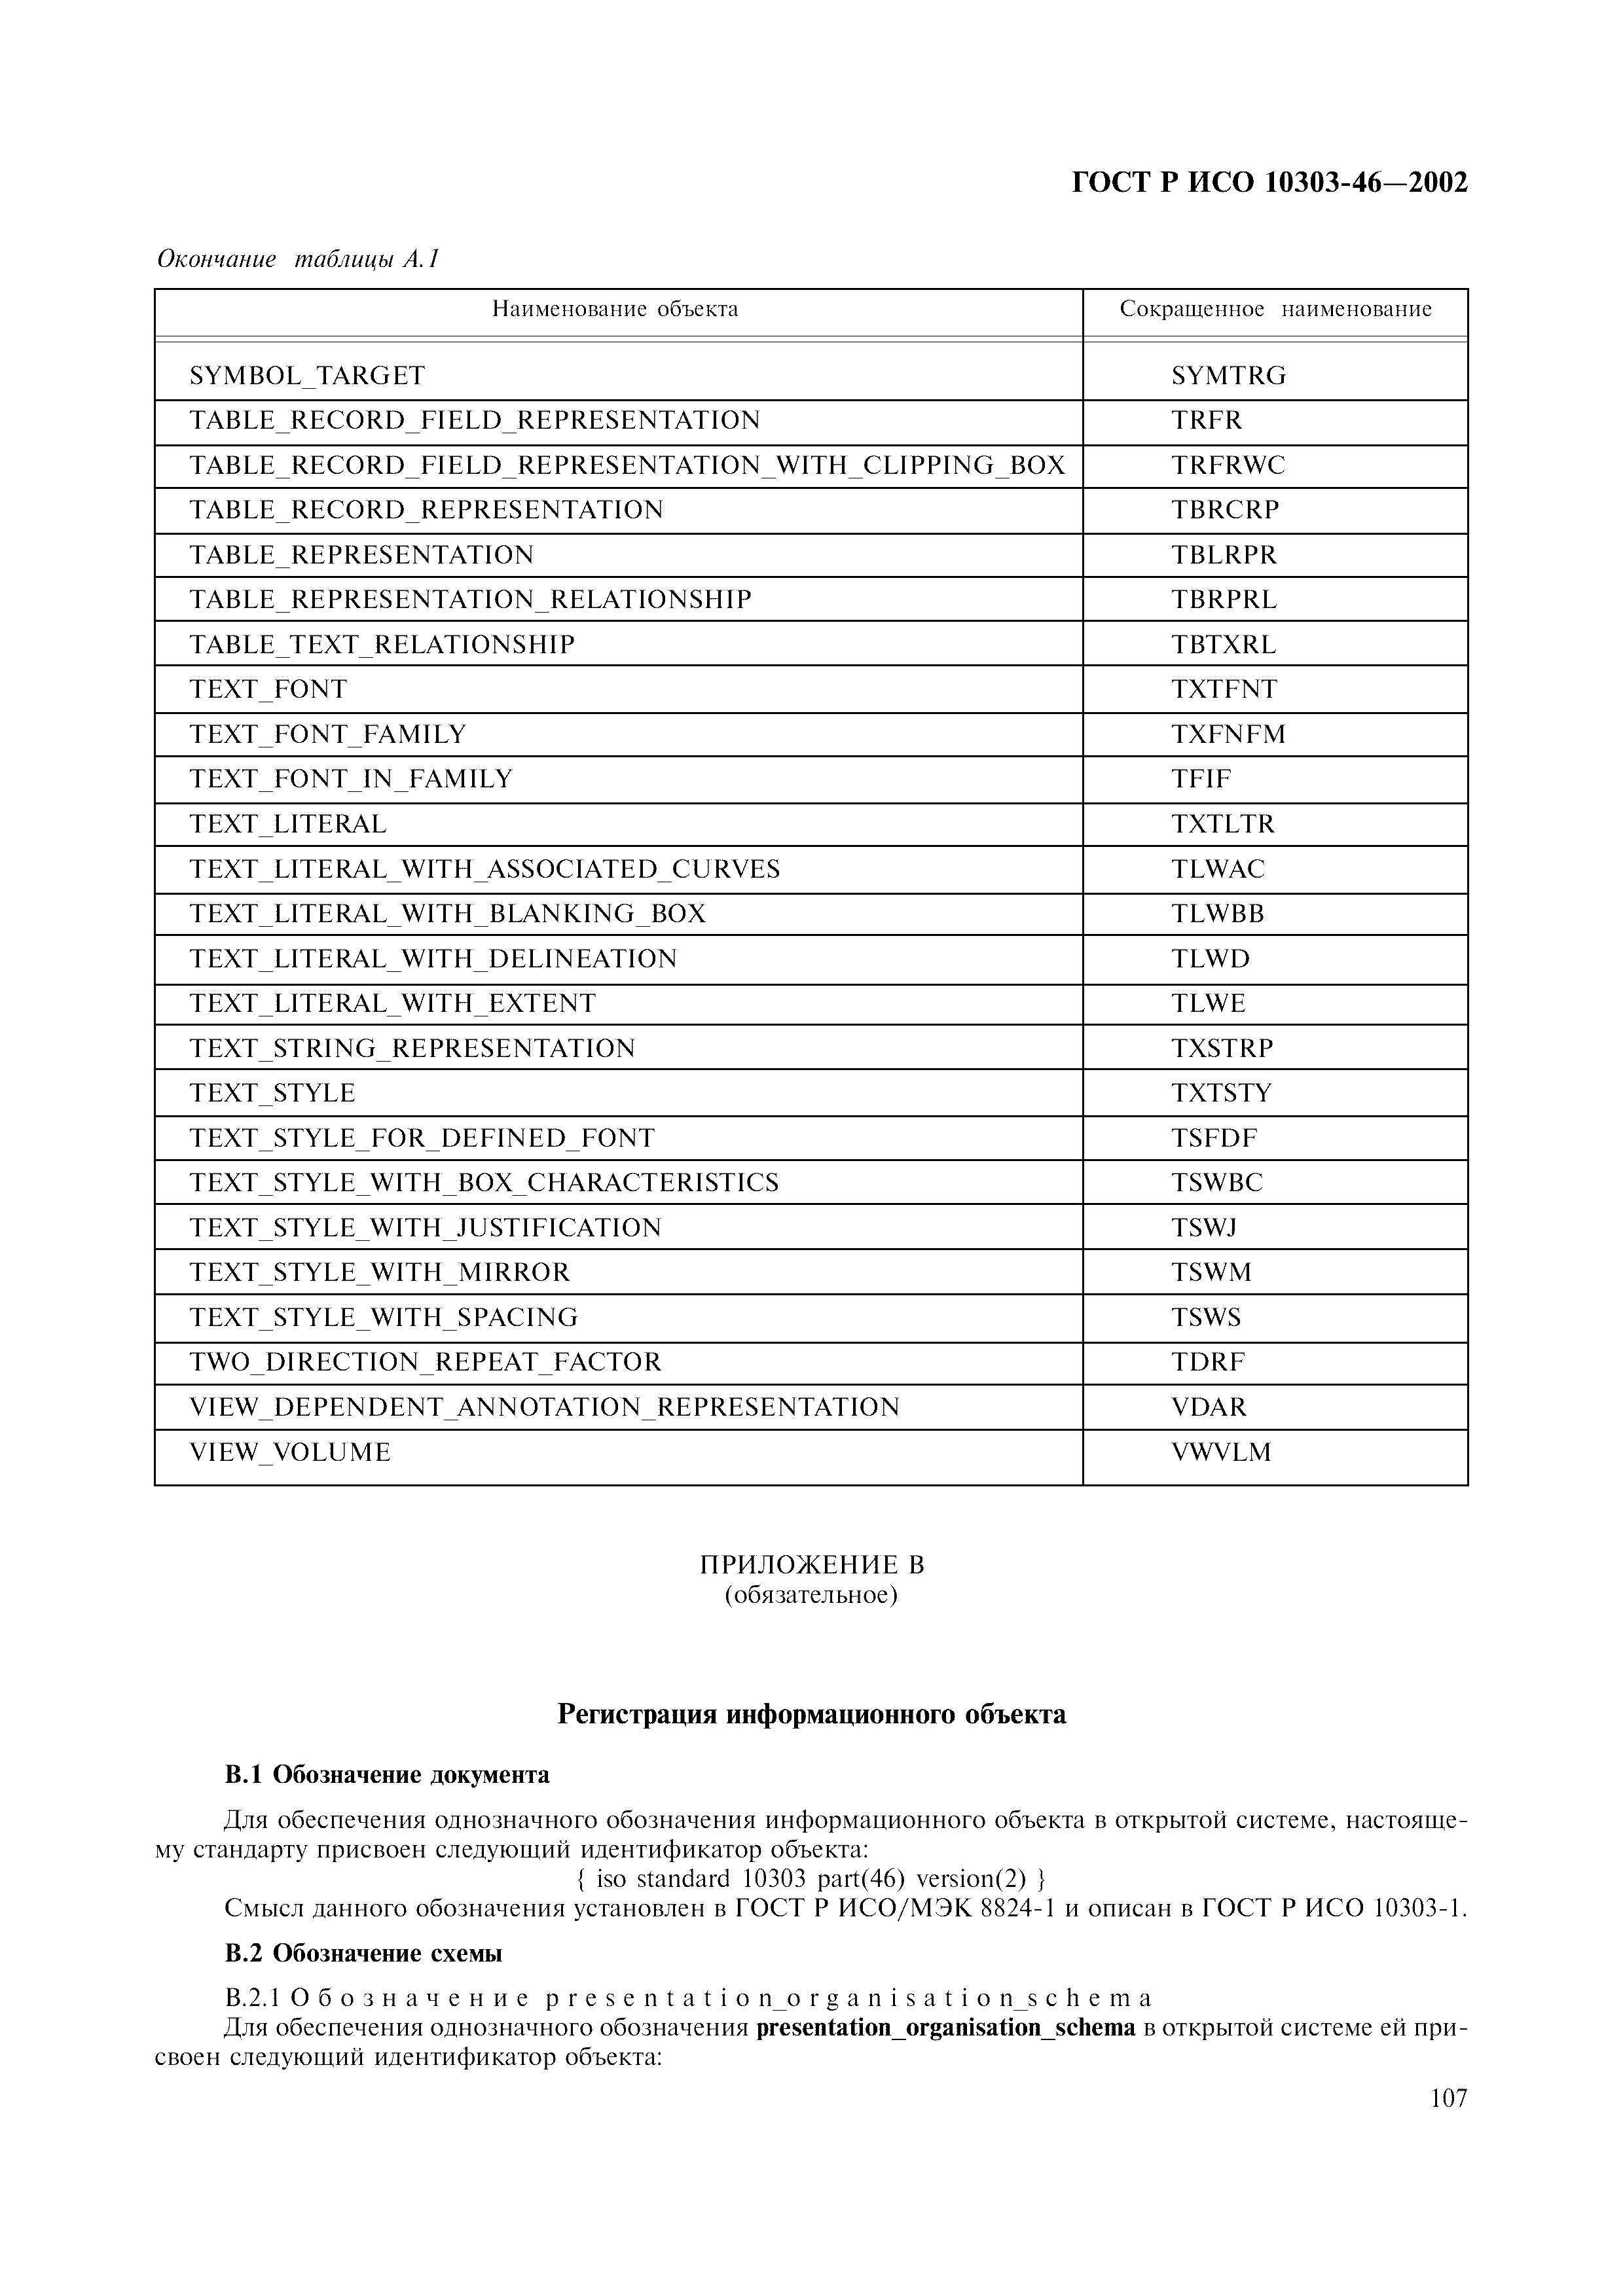 ГОСТ Р ИСО 10303-46-2002